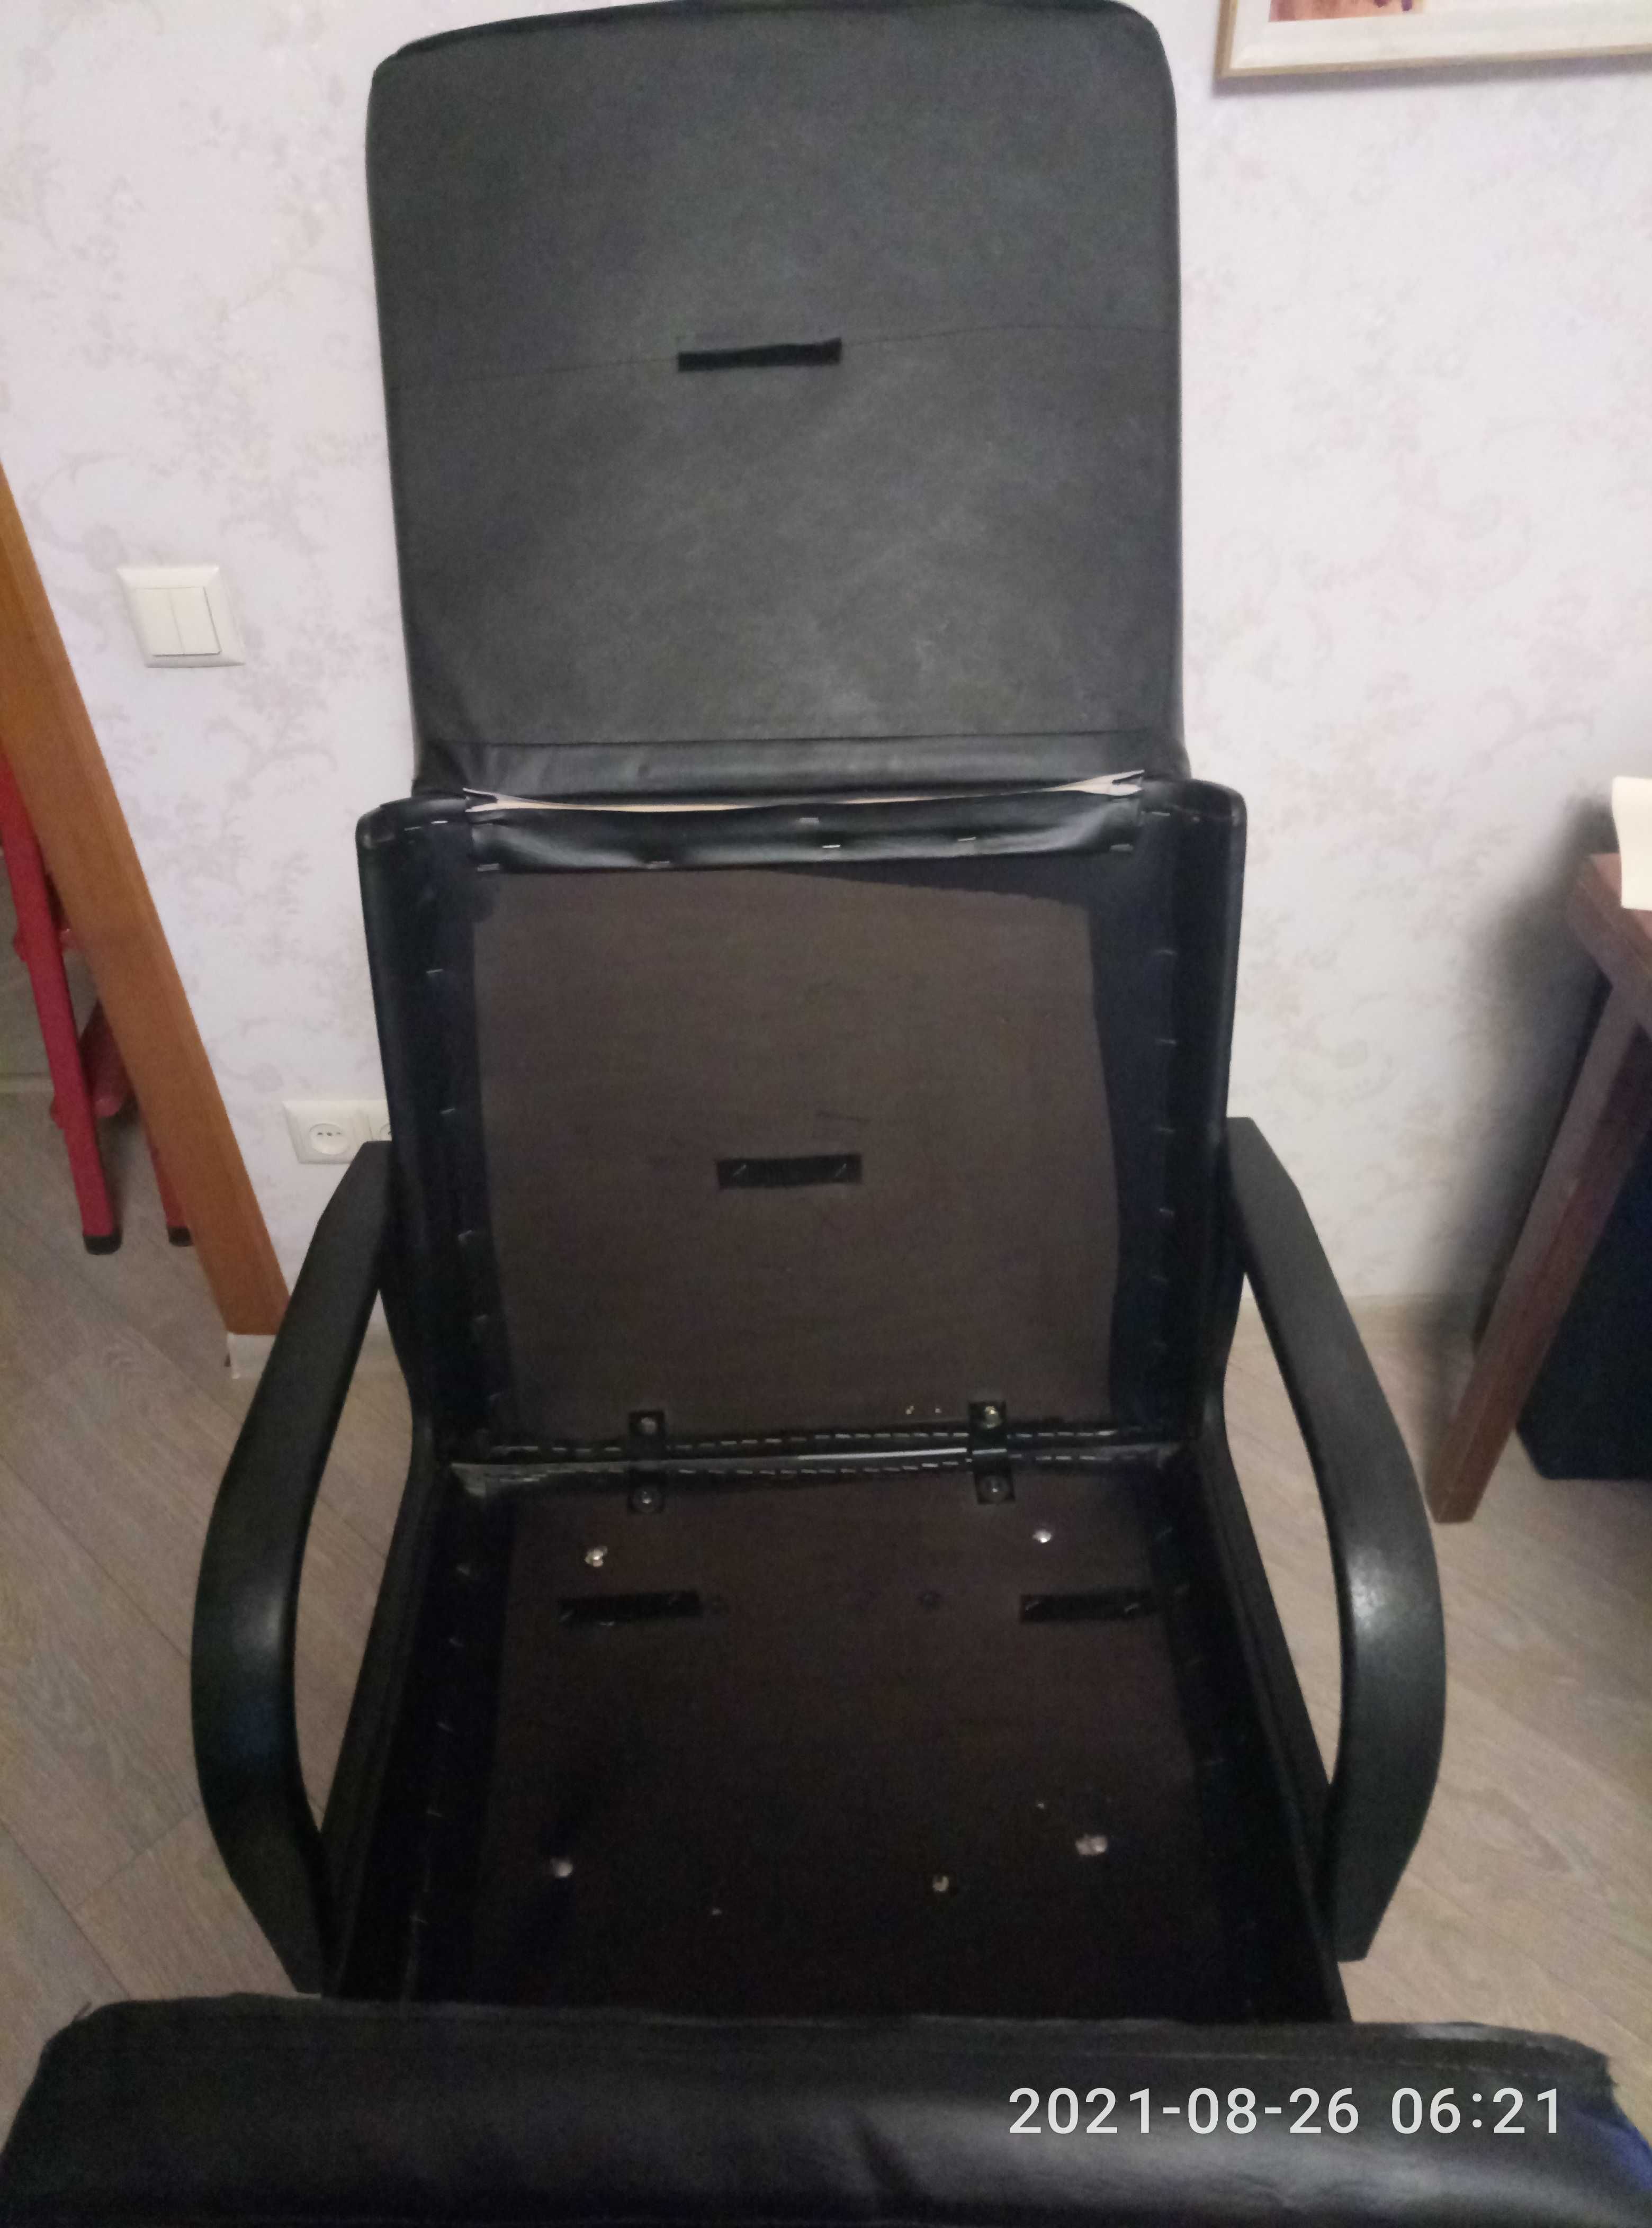 Кресло из кожи на металлической основе